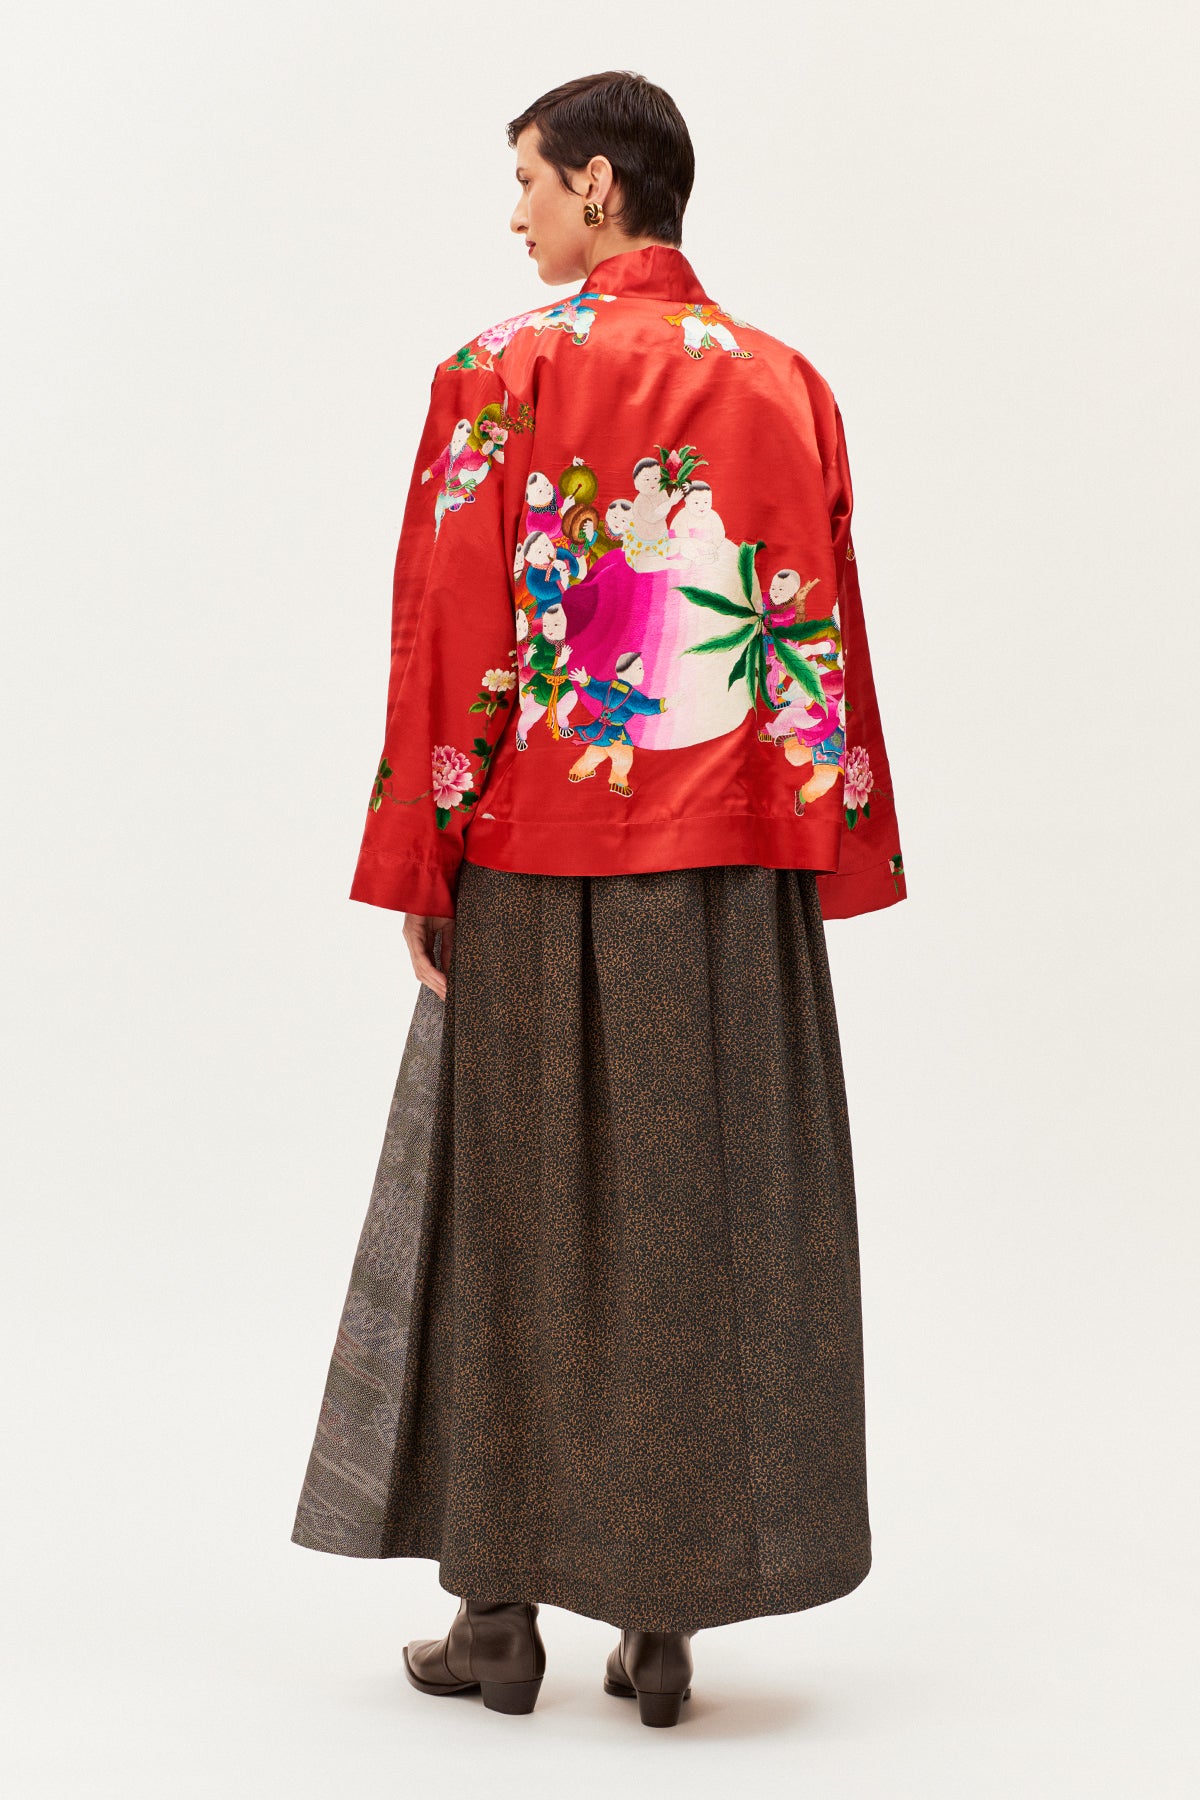 One-of-a-kind New Kimono Jacket